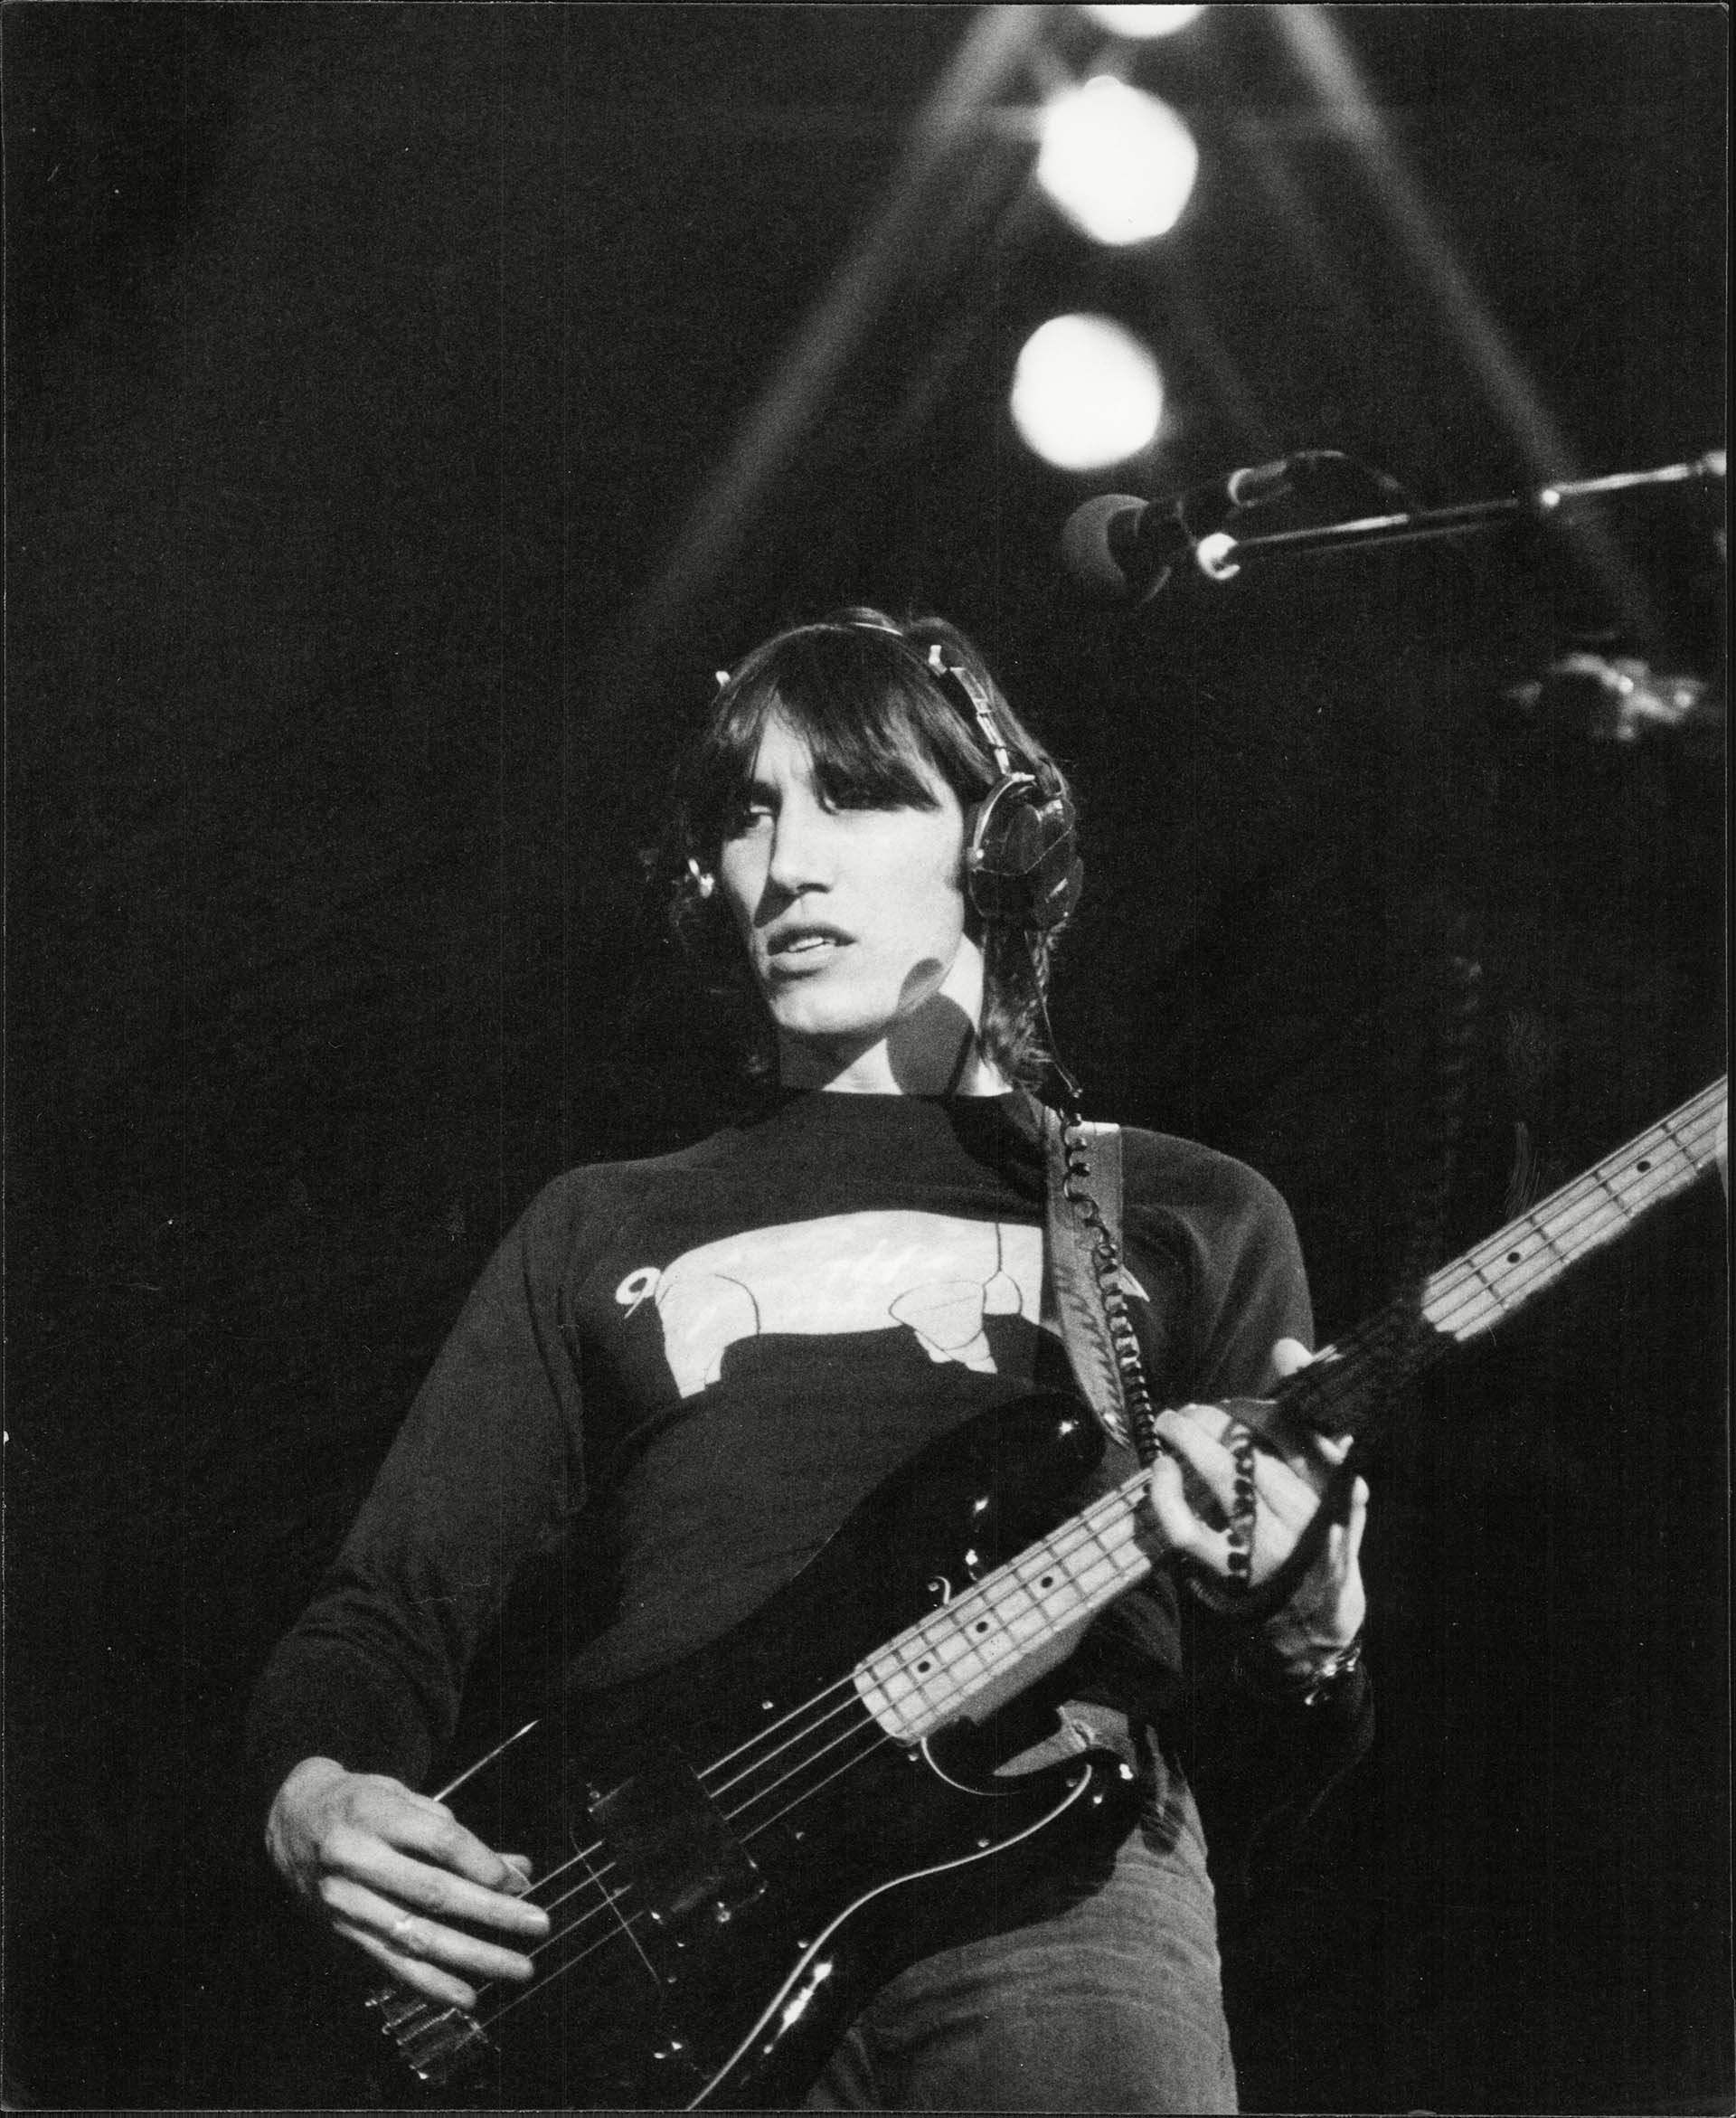 Roger Waters, el polémico genio creativo de Pink Floyd, envuelto en un pleito legal y personal desde hace más de 25 años con el guitarrista David Gilmour (Foto: David Thorpe/ANL/Shutterstock)